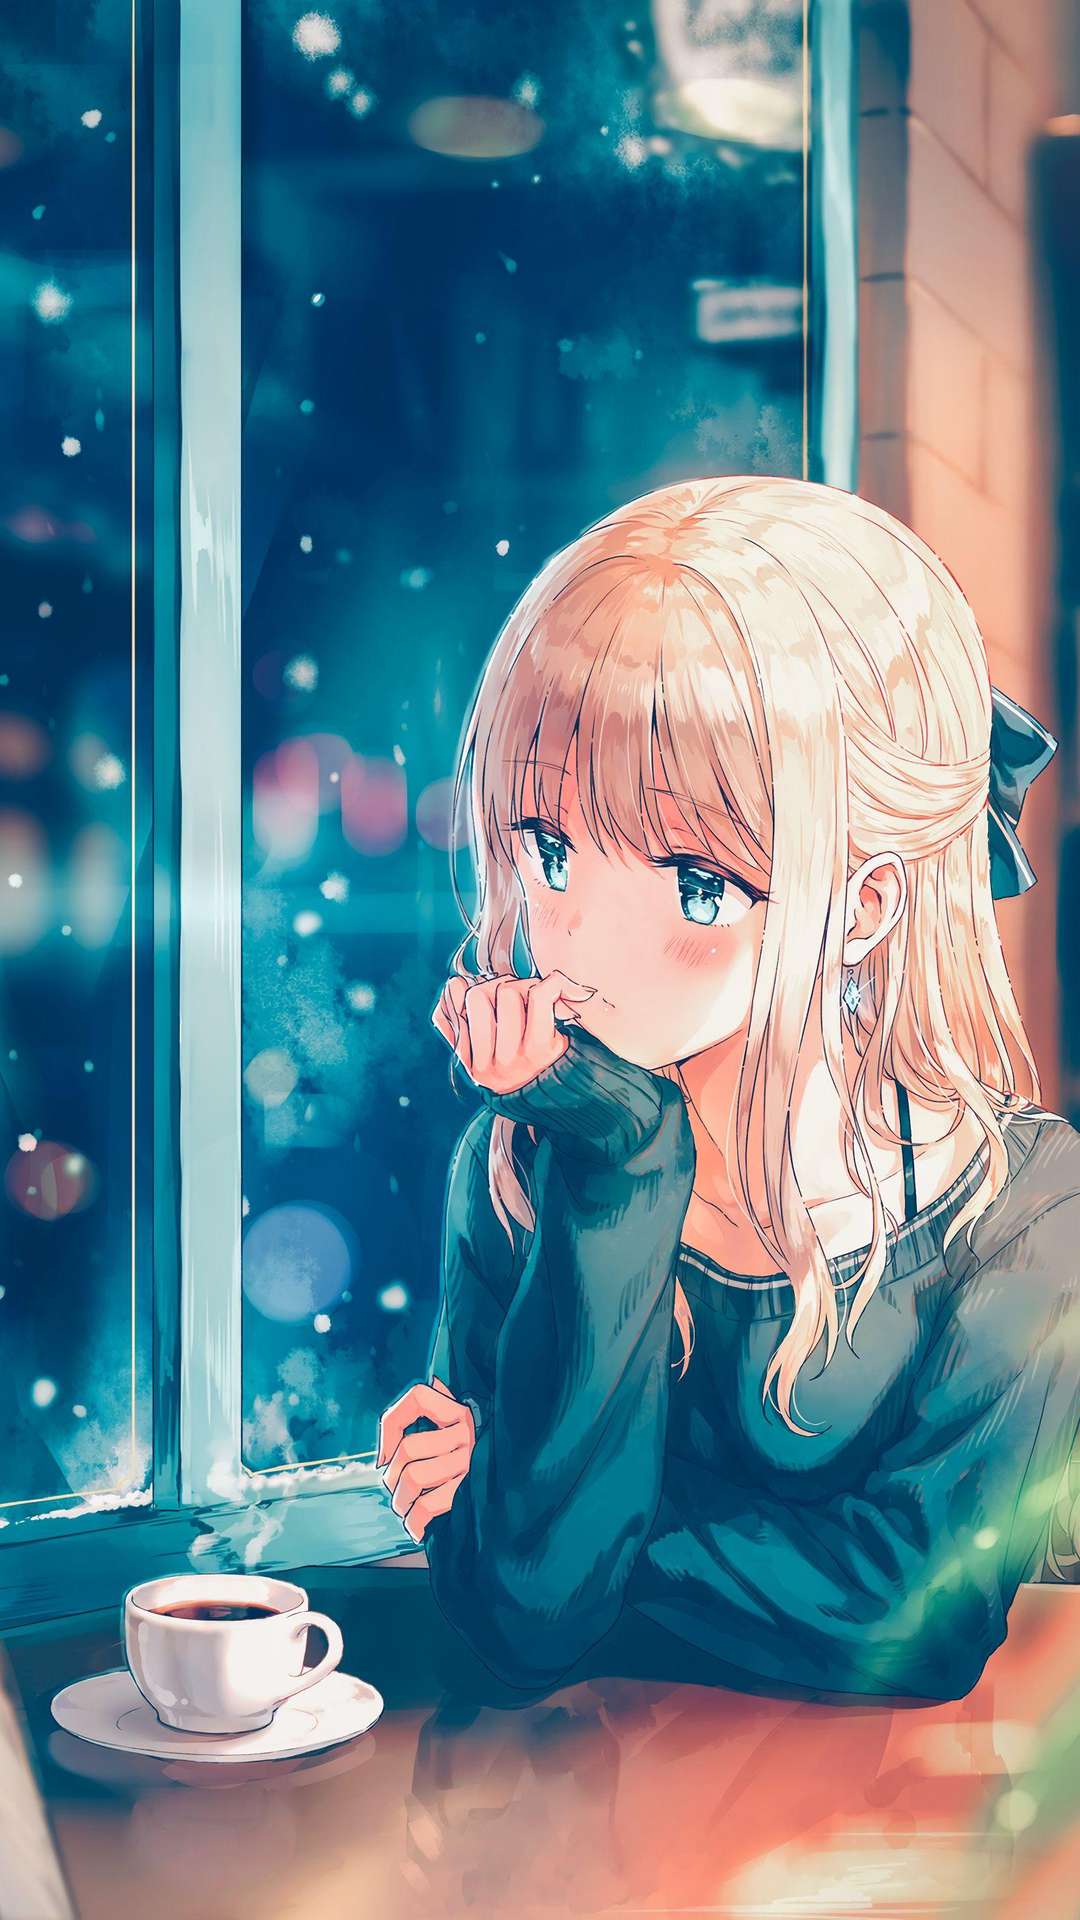 Awesome HD Anime Phone Wallpapers - Top Những Hình Ảnh Đẹp